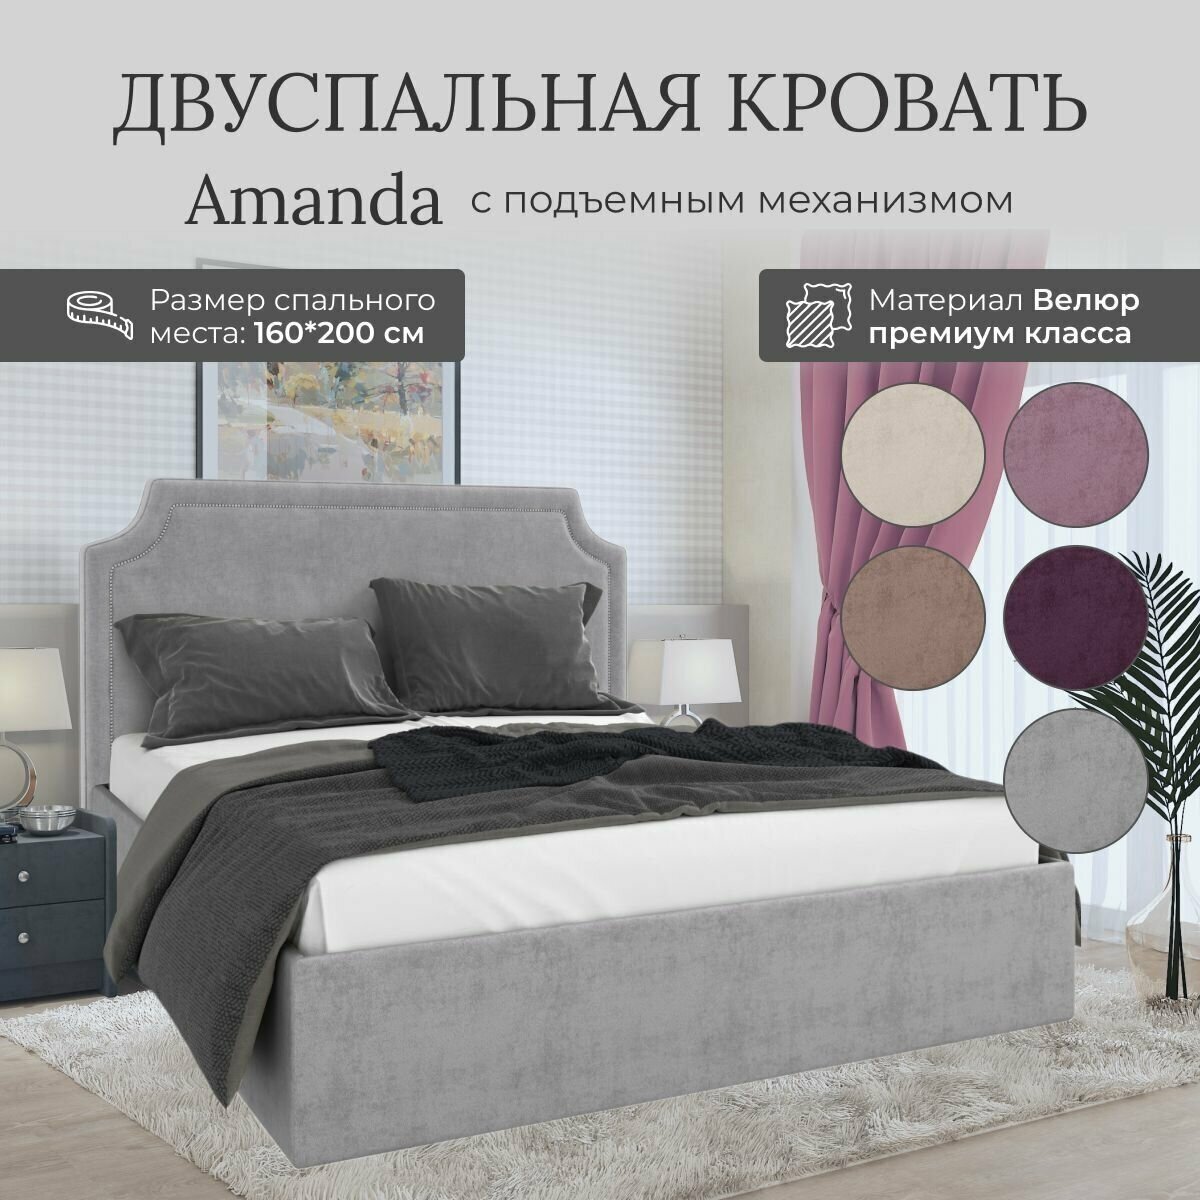 Кровать с подъемным механизмом Luxson Amanda двуспальная размер 160х200